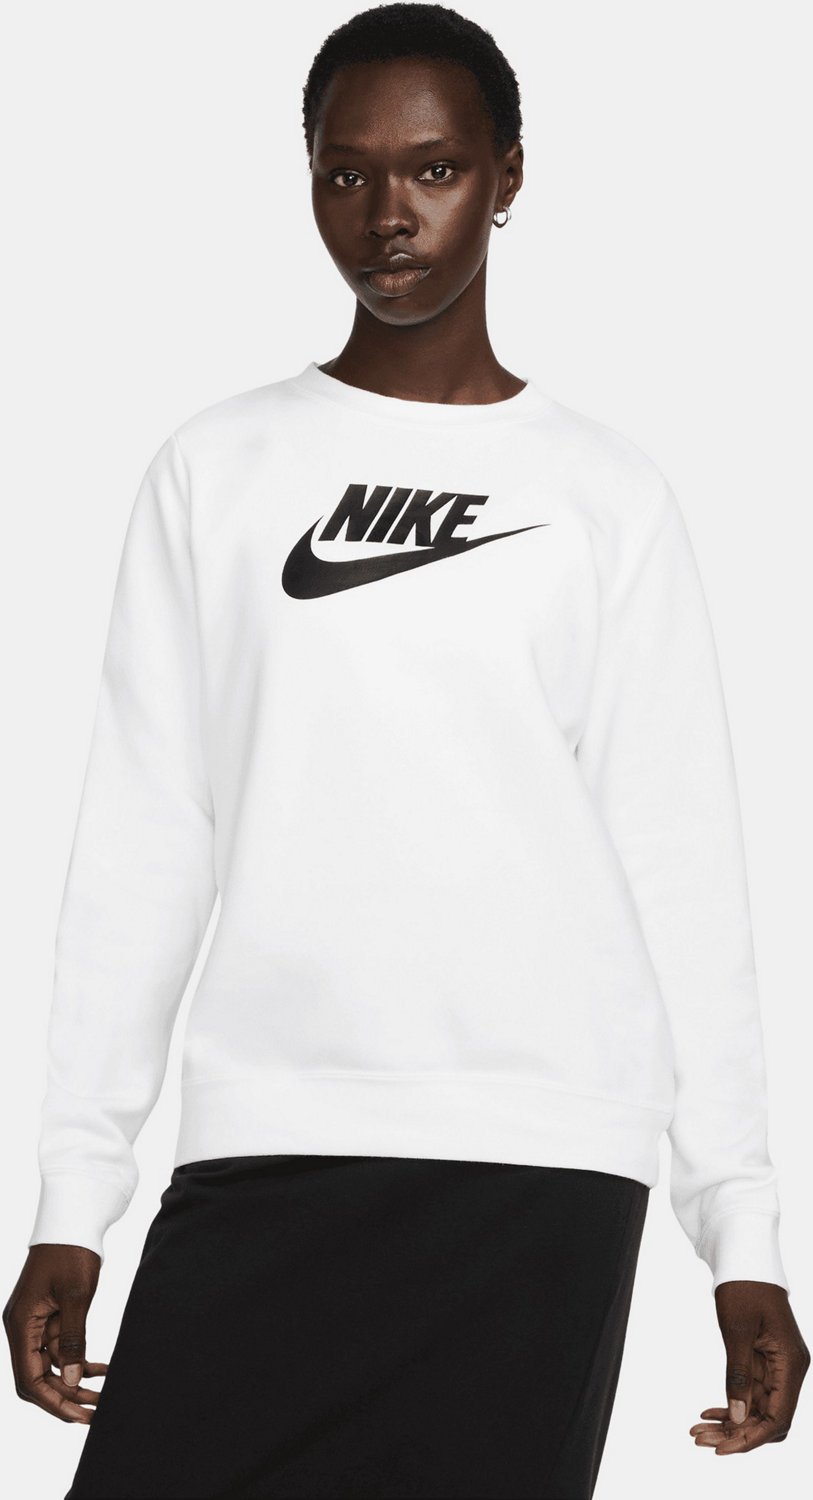 Sweatshirt Crew Graphic Sleeve Women\'s Club Neck Long | Fleece Academy Nike